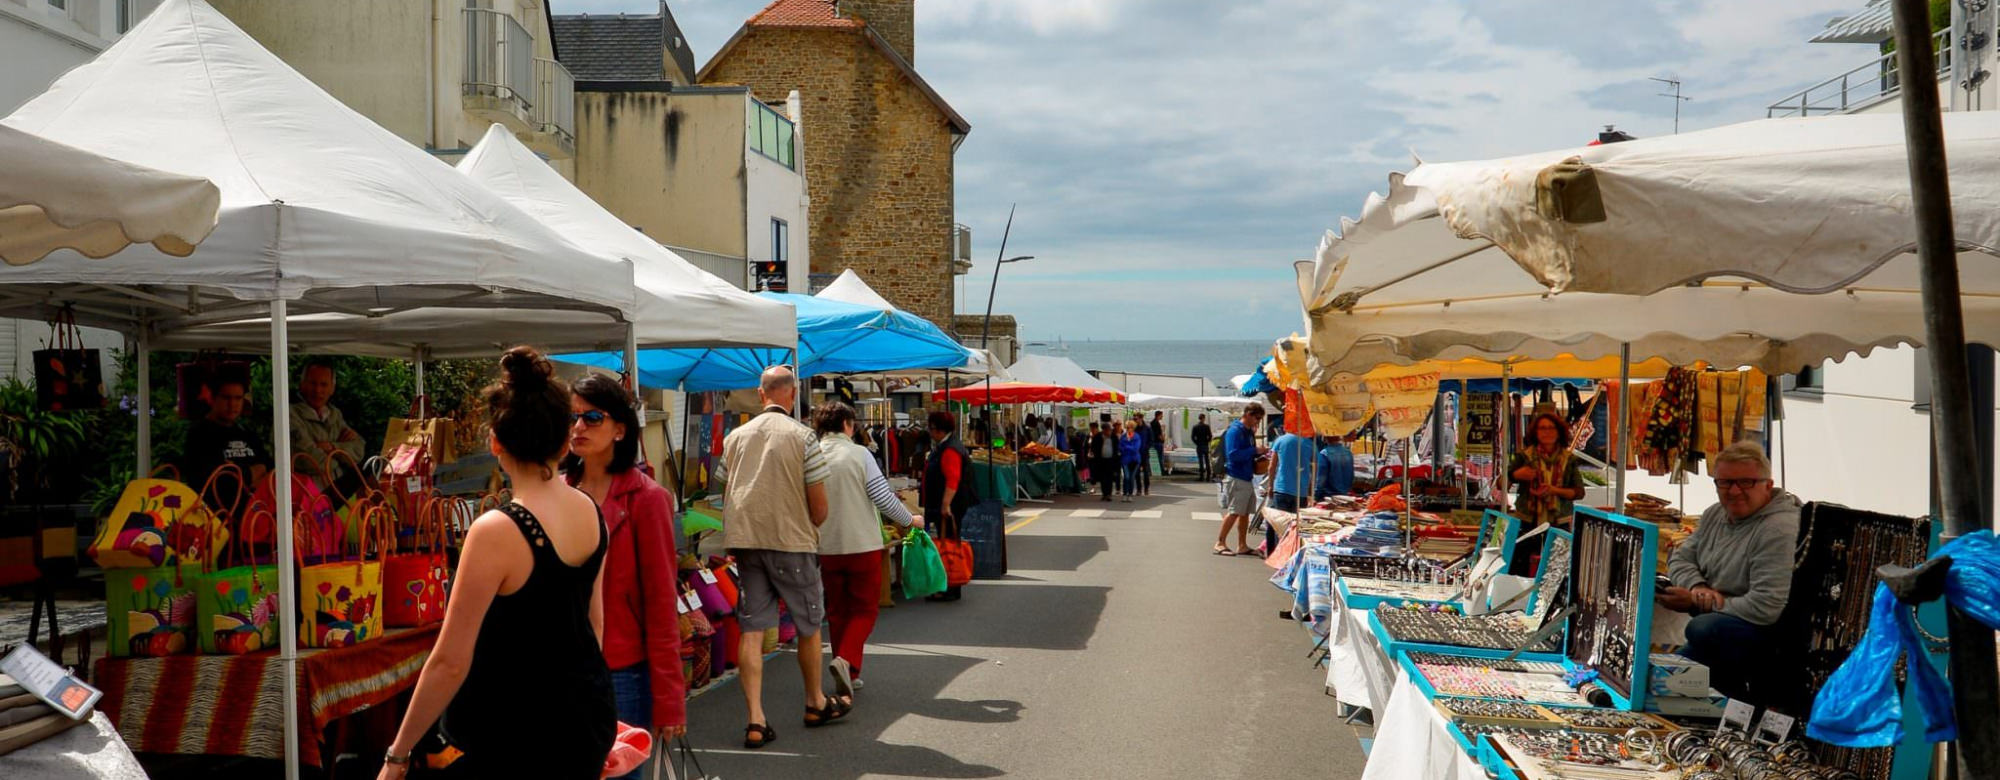 Allée vue mer du marché du dimanche de Larmor-Plage (Morbihan)